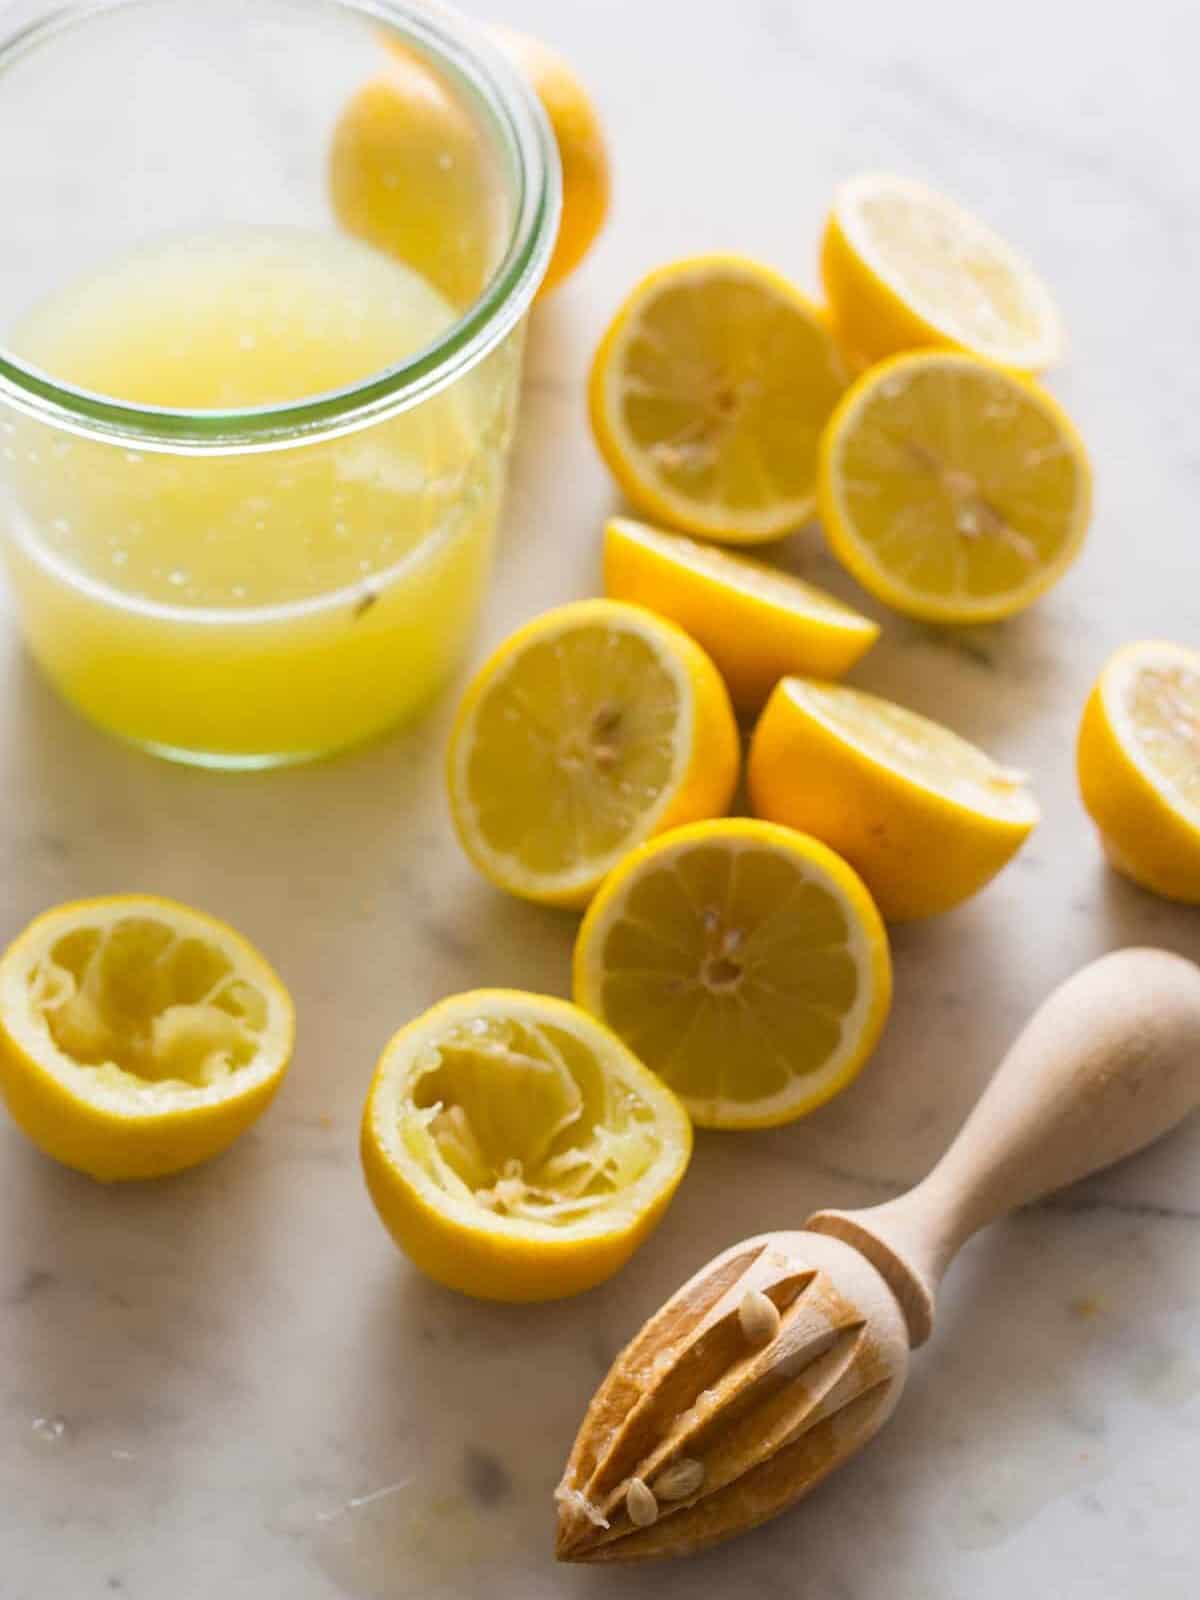 A glass of lemon juice, lemon halves, and a wooden citrus juicer.